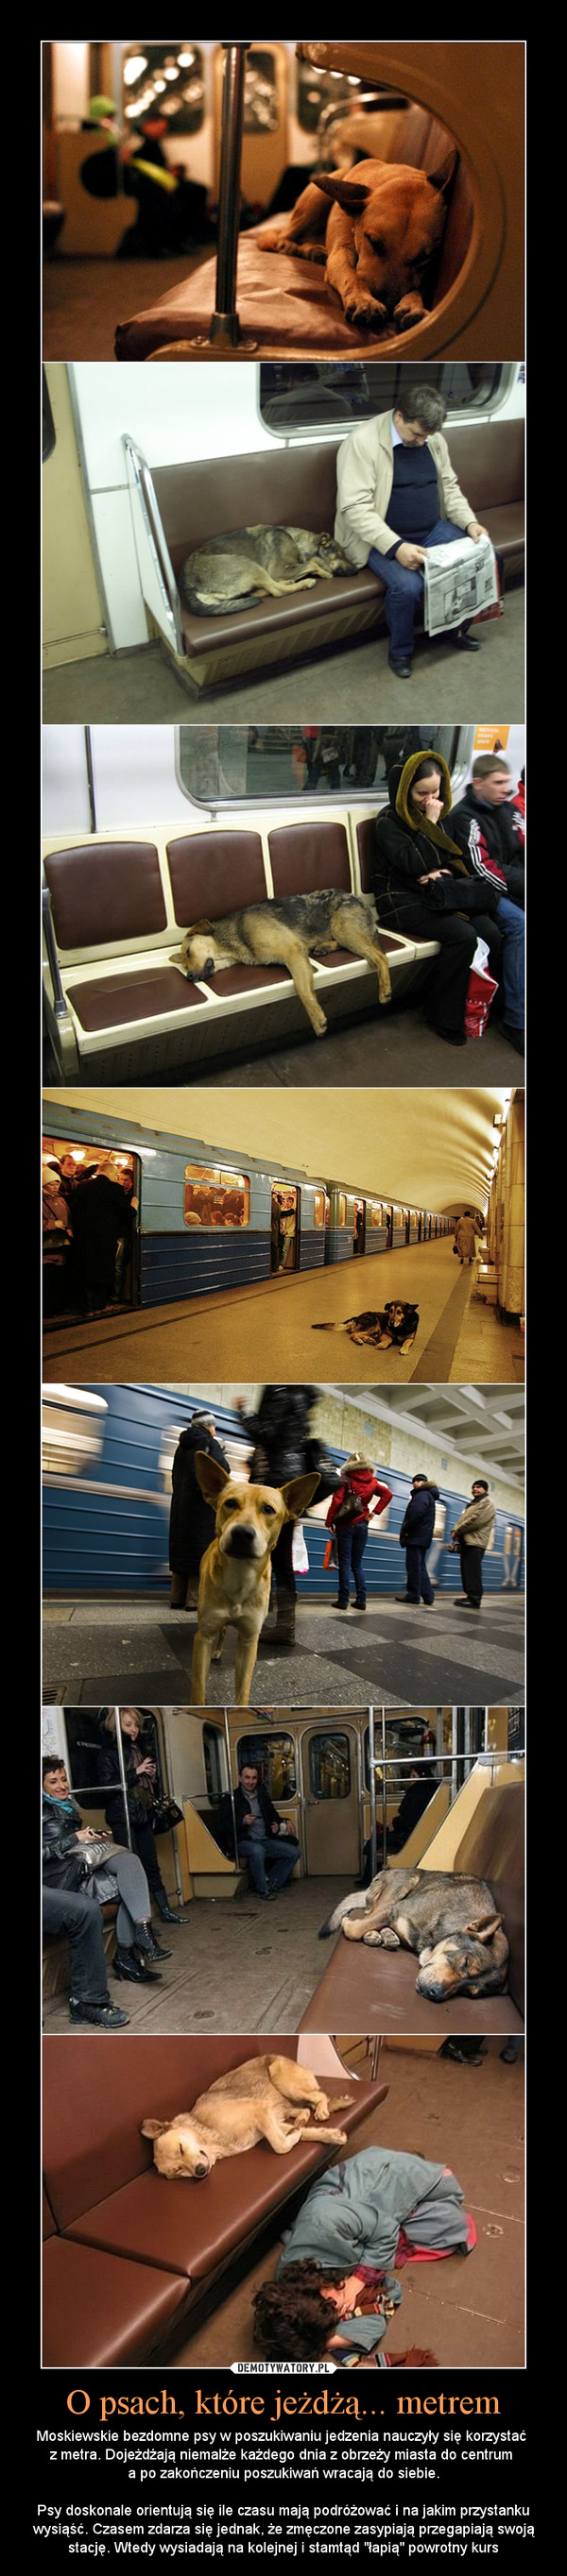 O psach, które jeżdżą... metrem – Moskiewskie bezdomne psy w poszukiwaniu jedzenia nauczyły się korzystać z metra. Dojeżdżają niemalże każdego dnia z obrzeży miasta do centrum a po zakończeniu poszukiwań wracają do siebie.Psy doskonale orientują się ile czasu mają podróżować i na jakim przystanku wysiąść. Czasem zdarza się jednak, że zmęczone zasypiają przegapiają swoją stację. Wtedy wysiadają na kolejnej i stamtąd "łapią" powrotny kurs 